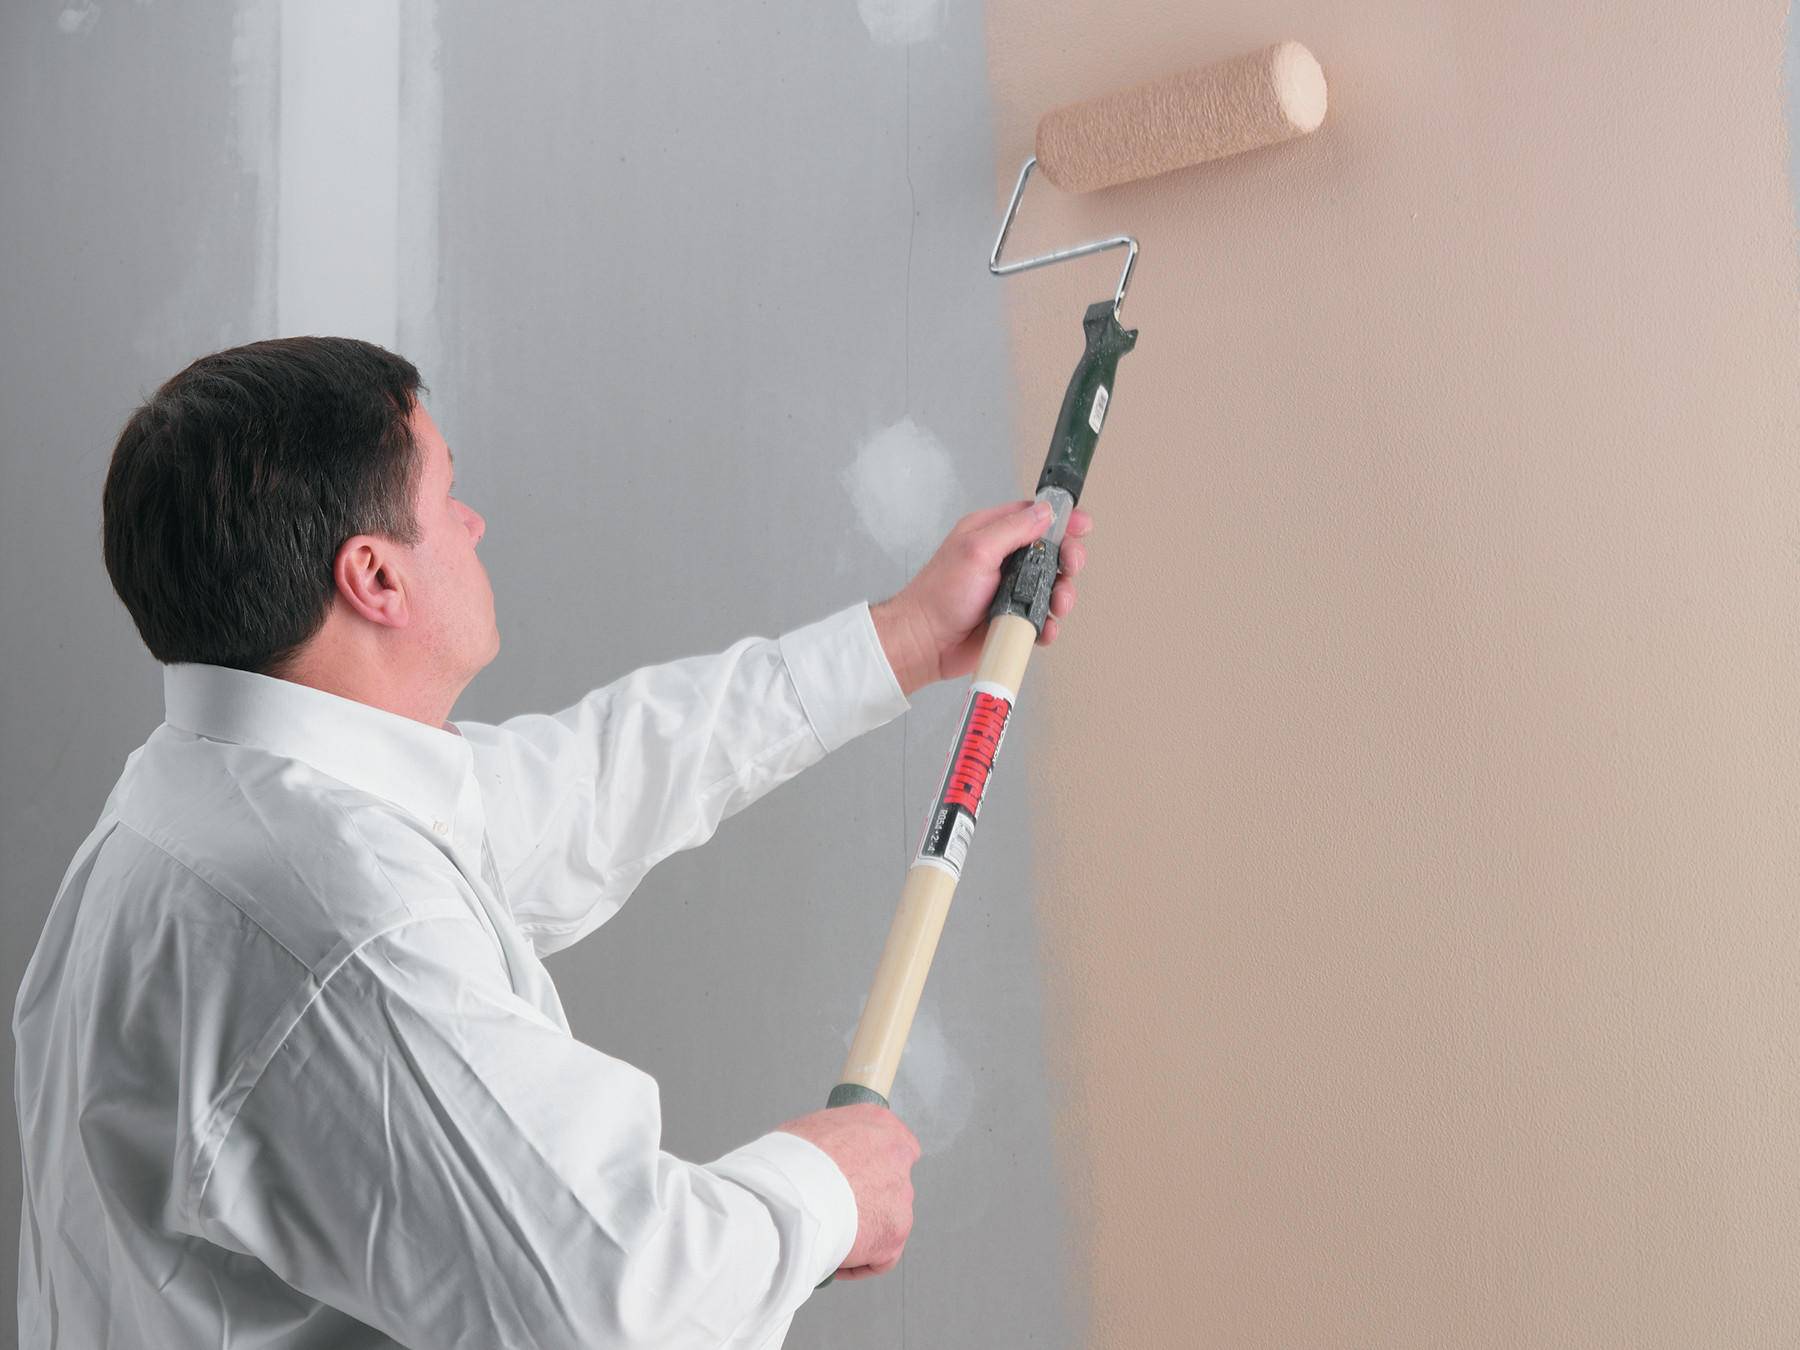 Технология окраски водоэмульсионкой: как подготовить под покраску стену, как правильно красить без разводов и какие краски лучше по рейтингу популярности